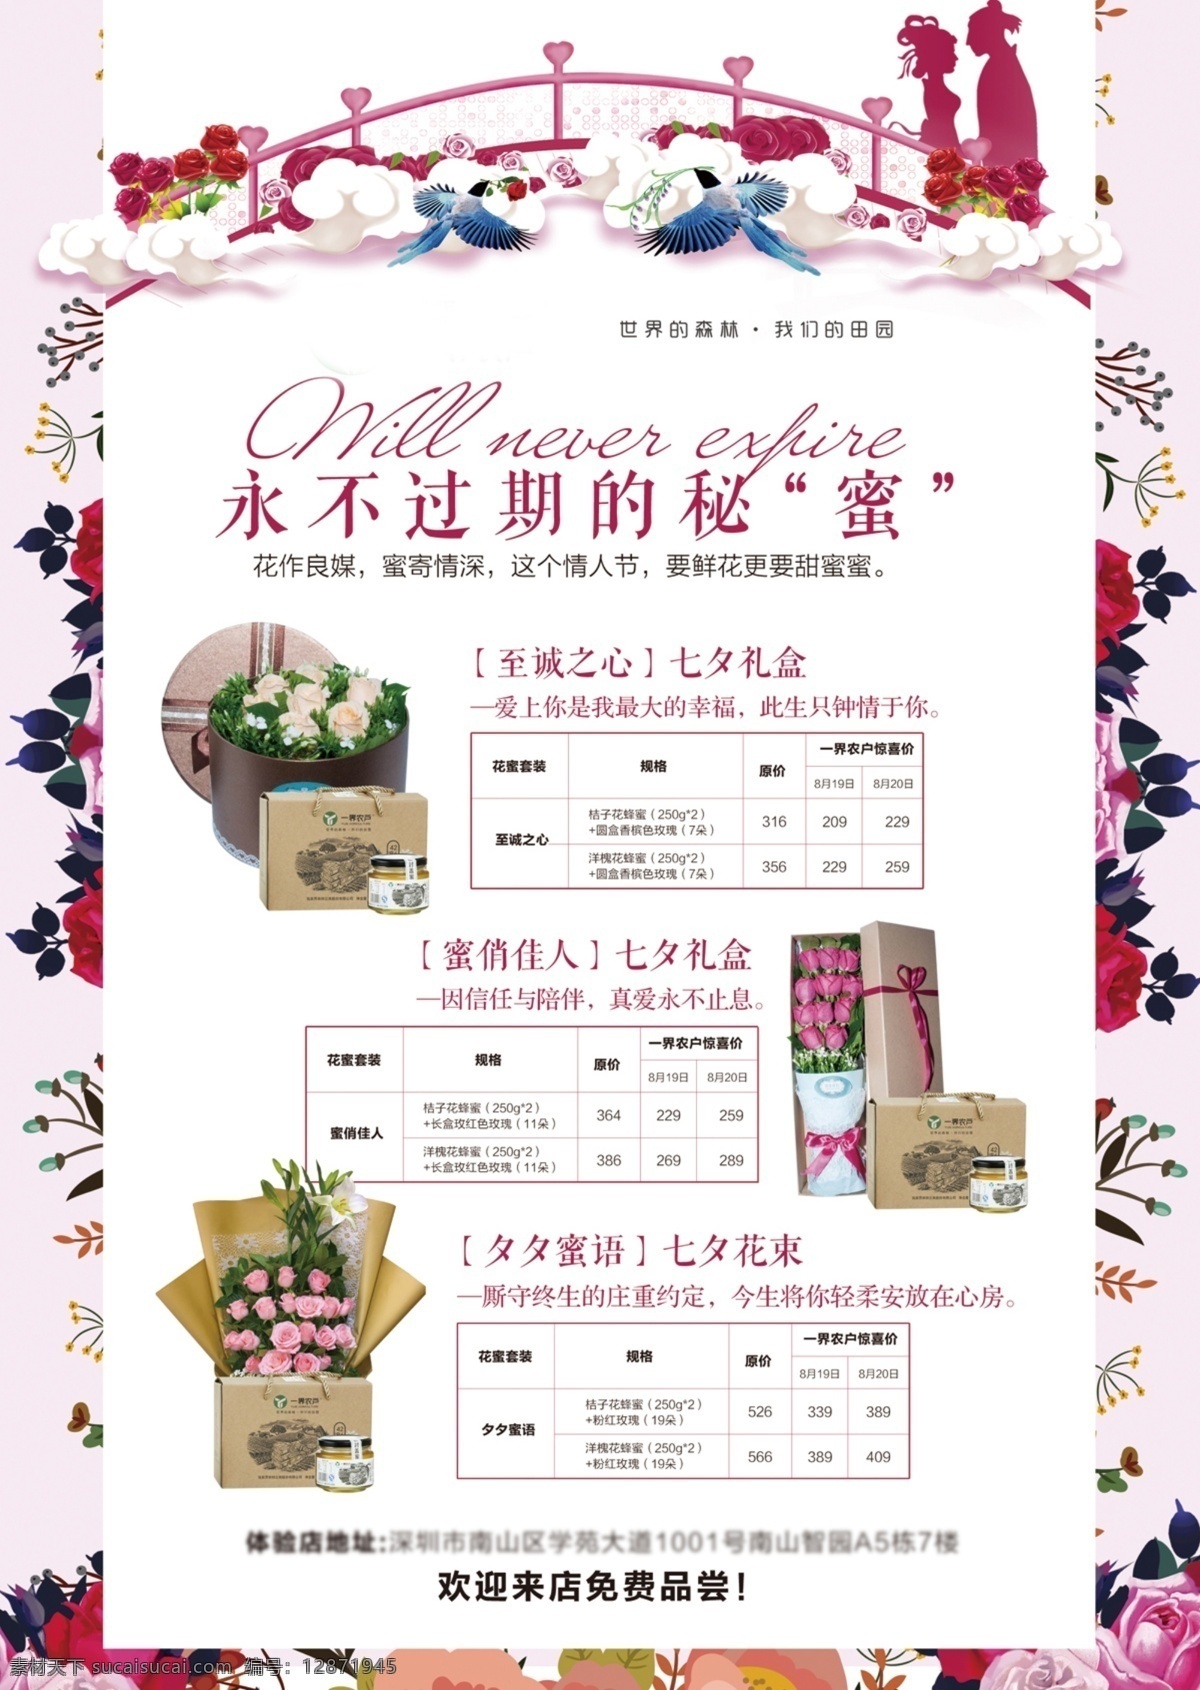 七夕 节日鲜花 宣传单 页 鲜花 蜂蜜 单页 爱情 白色